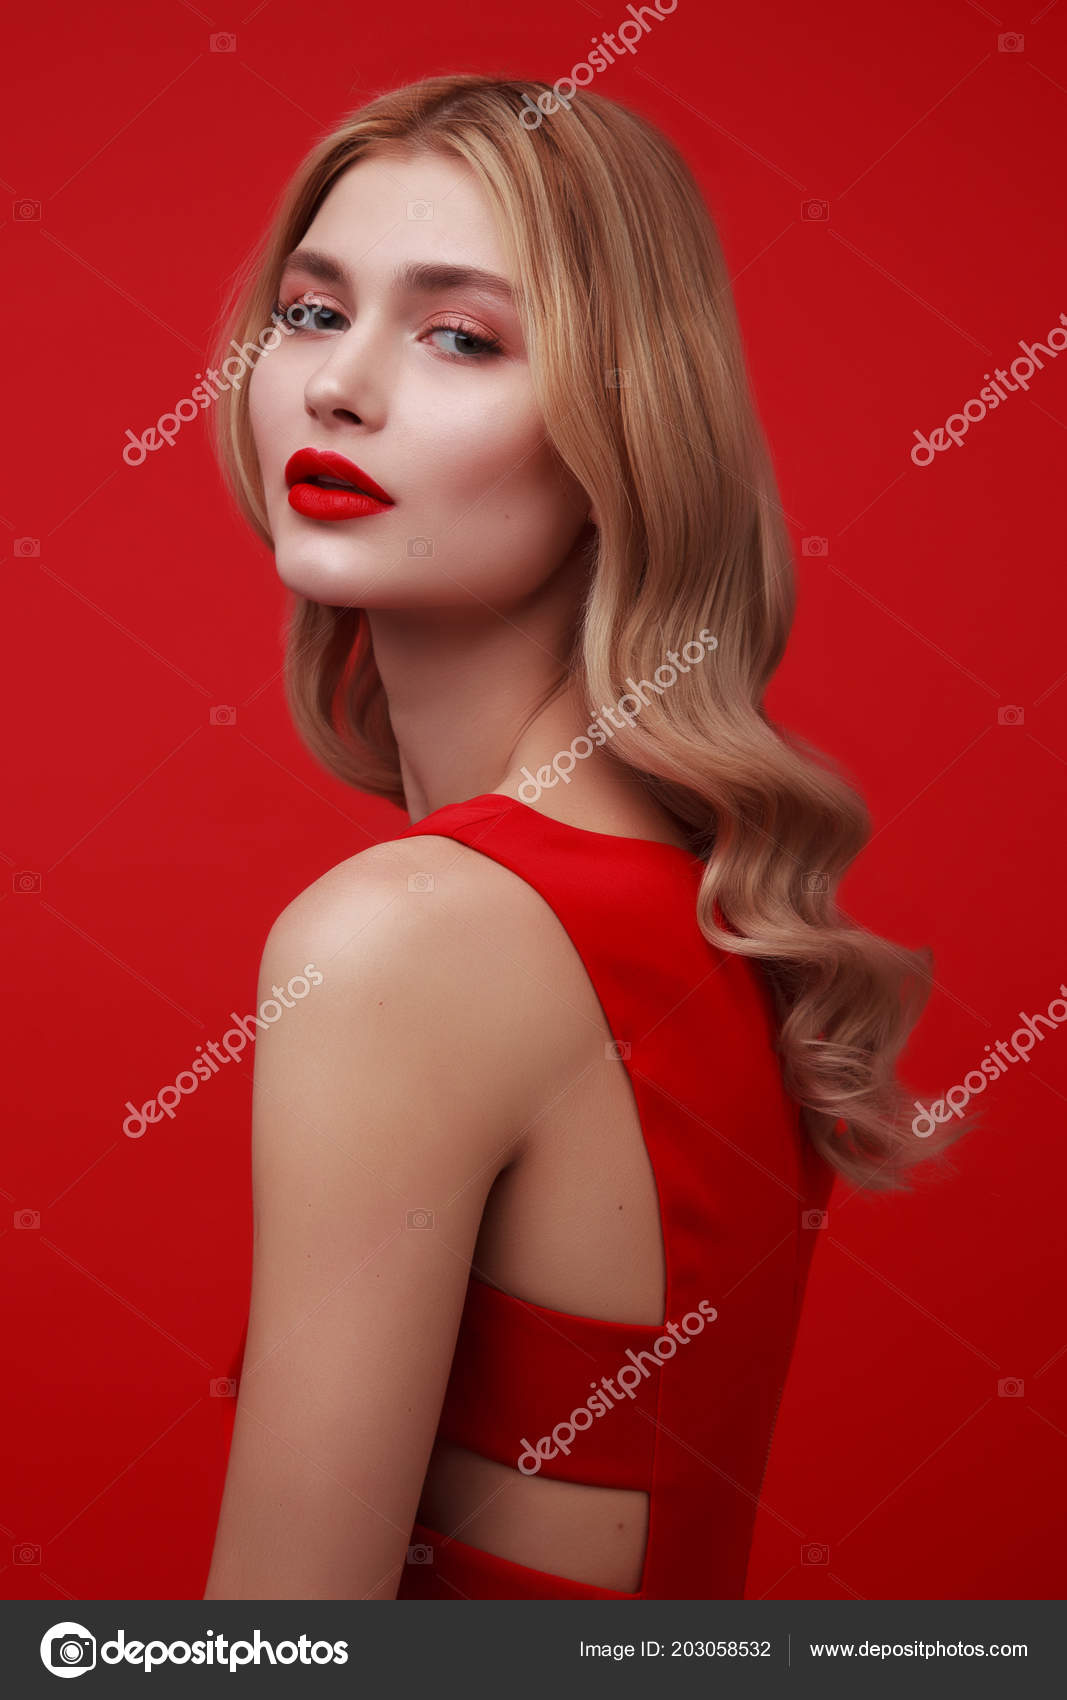 Bạn muốn khám phá phong cách mới mẻ với chiếc váy đỏ lộng lẫy? Hãy xem ngay hình ảnh liên quan để khám phá sự lộng lẫy của cô gái trẻ tóc vàng trong chiếc váy đỏ tuyệt đẹp!